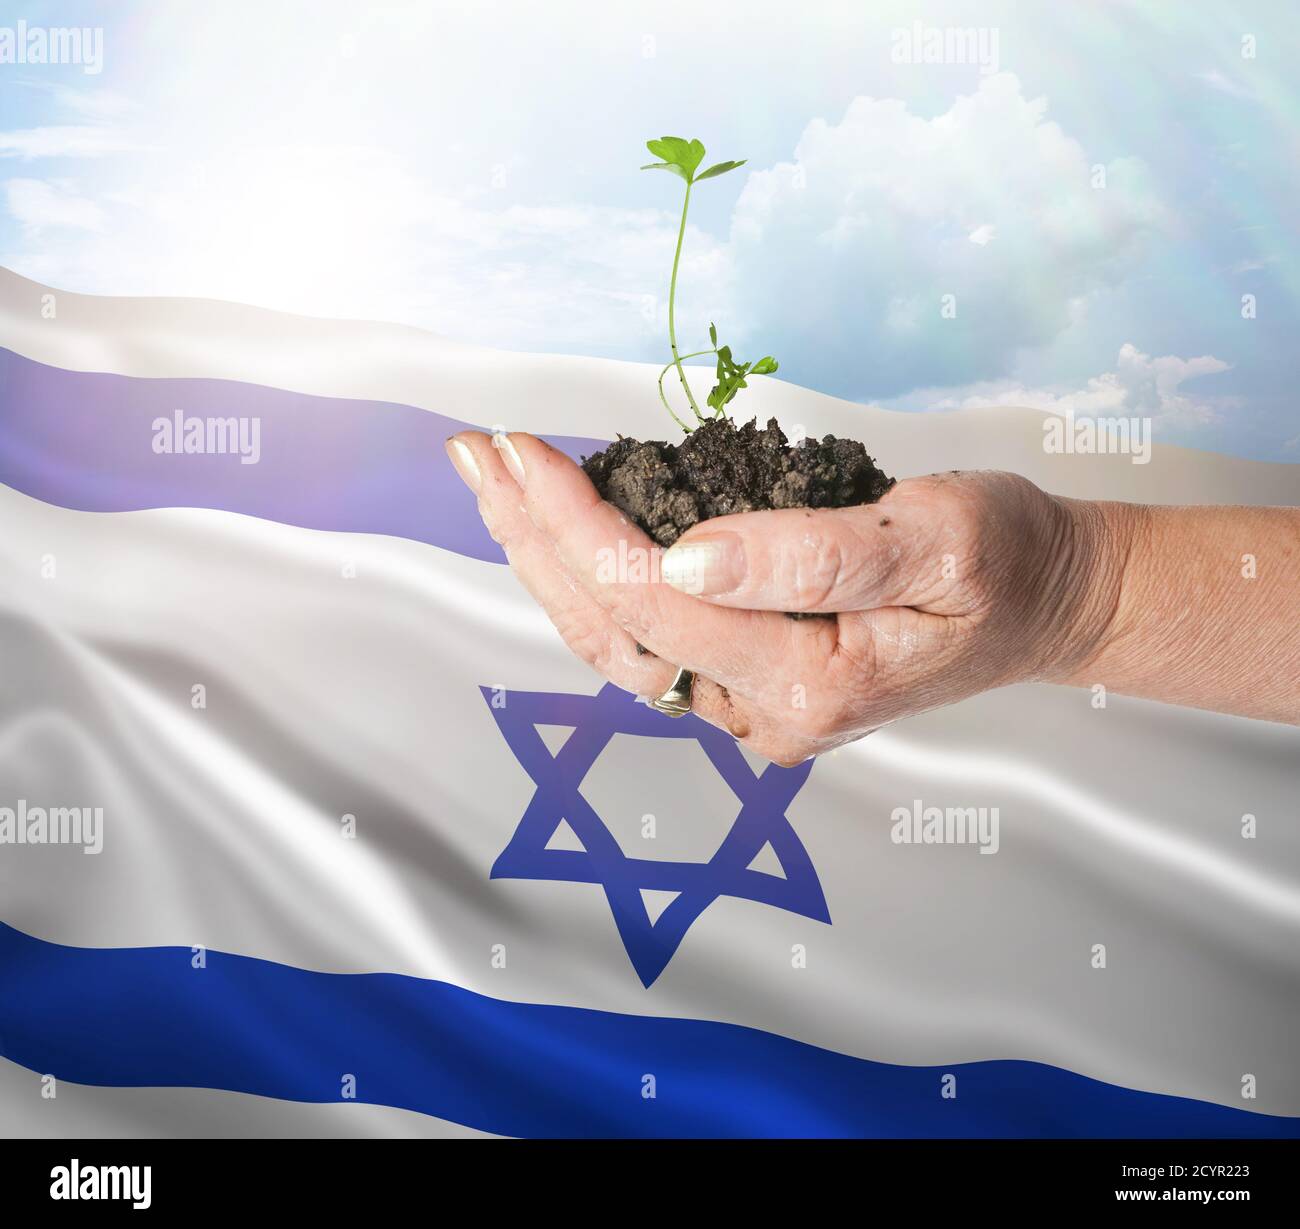 Israel crecimiento y nuevo comienzo. Concepto de energía renovable verde y ecología. Mano sosteniendo planta joven. Foto de stock